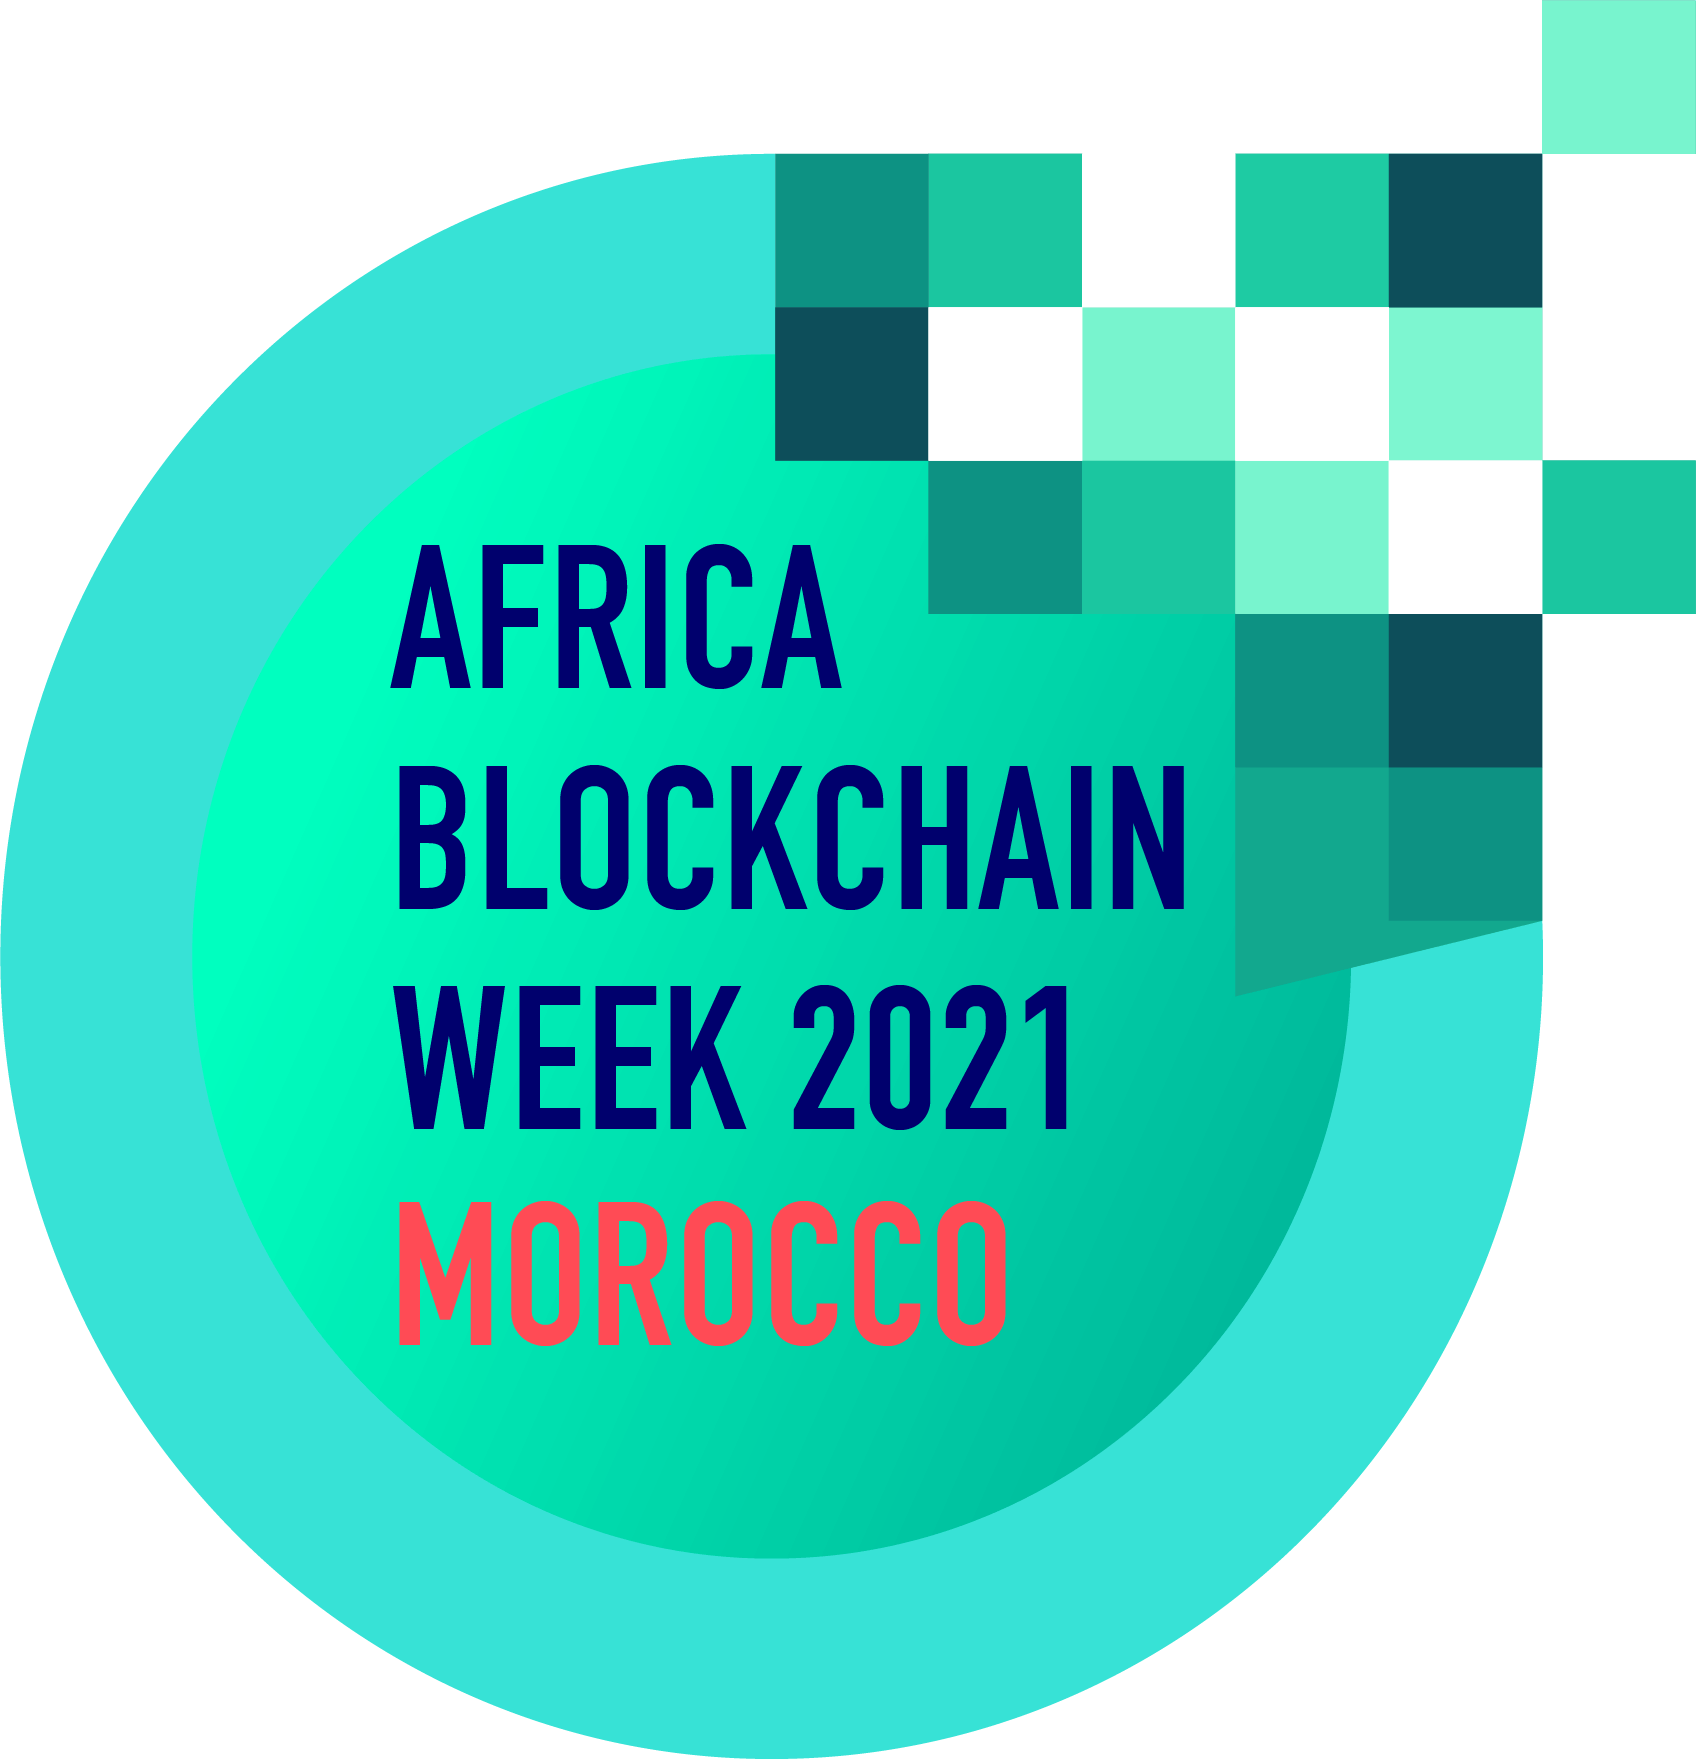 Africa Blockchain Week 2021